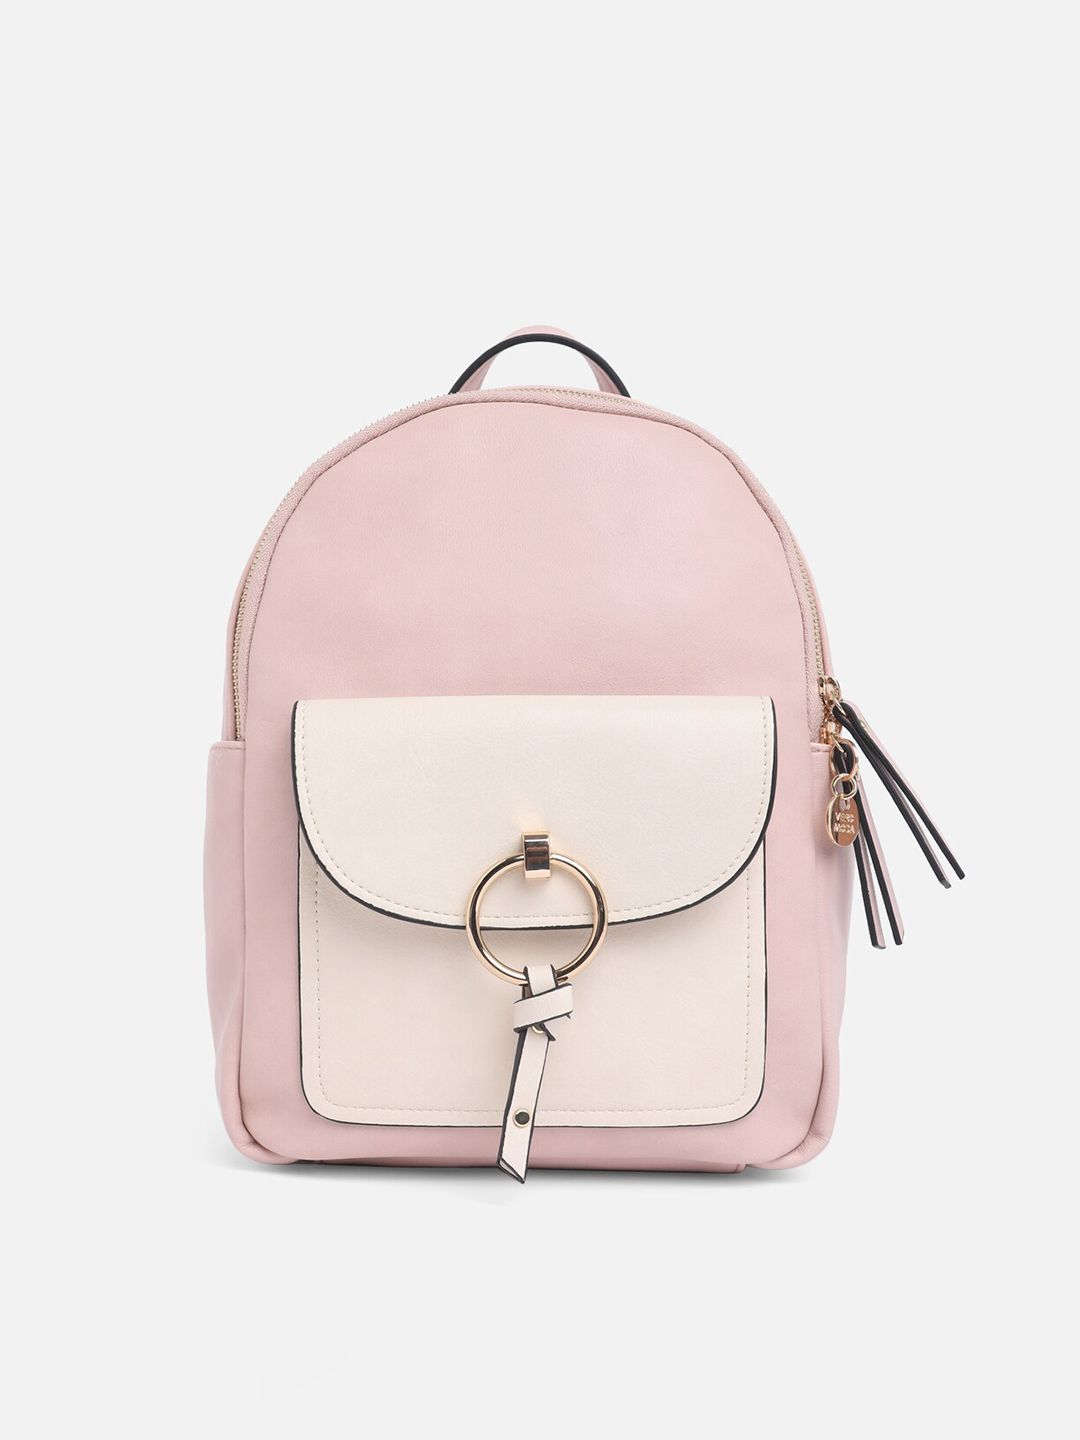 Vero Moda Women Pink & Beige Backpack Price in India